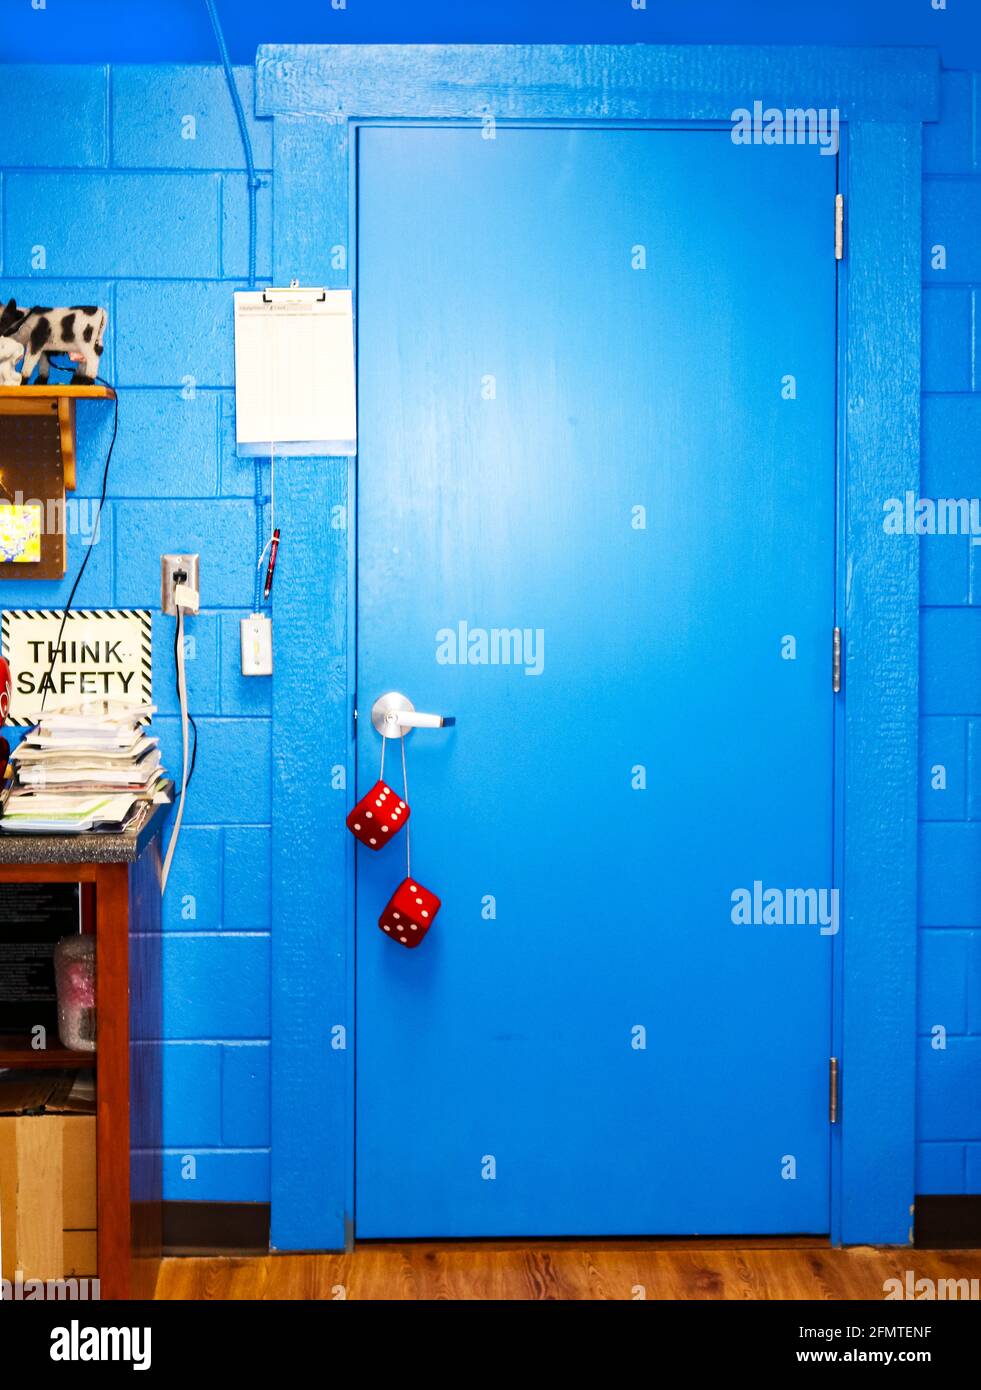 Hellblaue Tür im Computerraum mit Schild „Think Safety“ Und Stapel von Handbüchern - verschwommene Würfel hängen von der Tür Griff Stockfoto